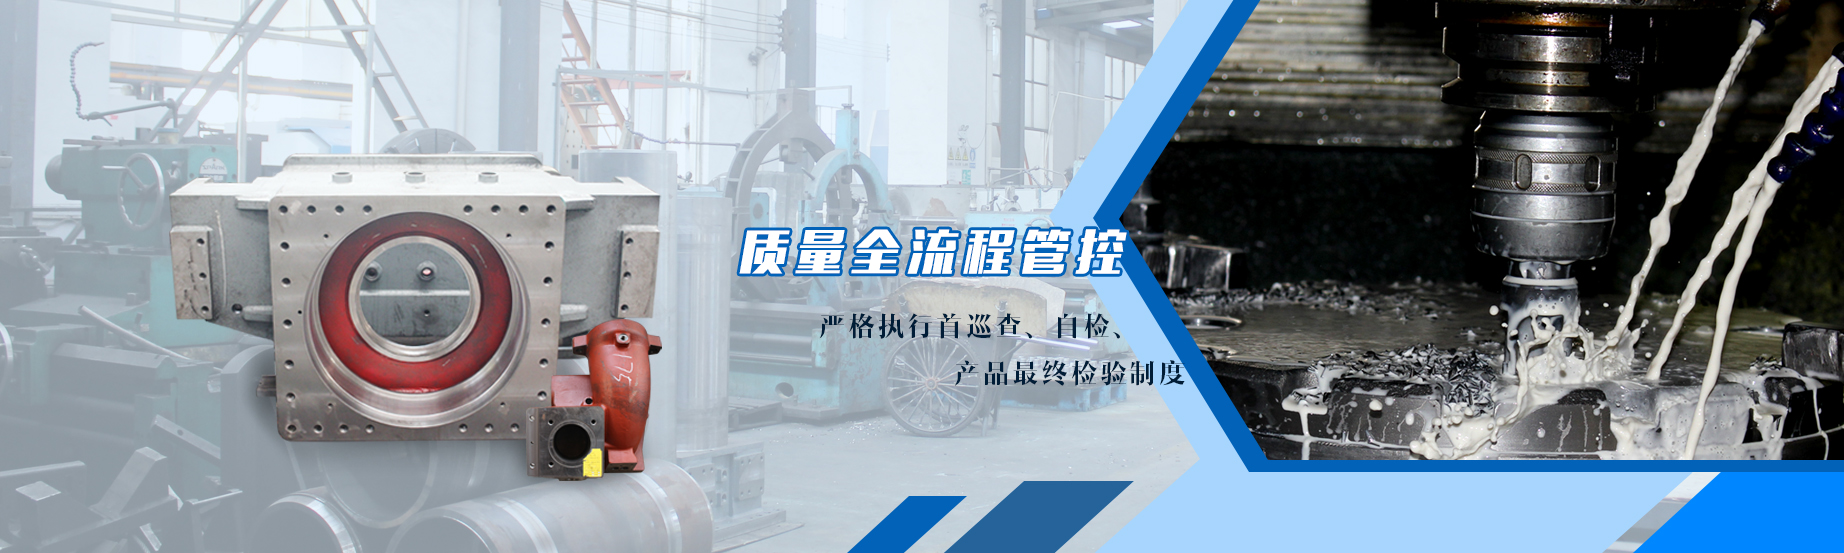 常州CNC精密机械(中国)有限责任公司